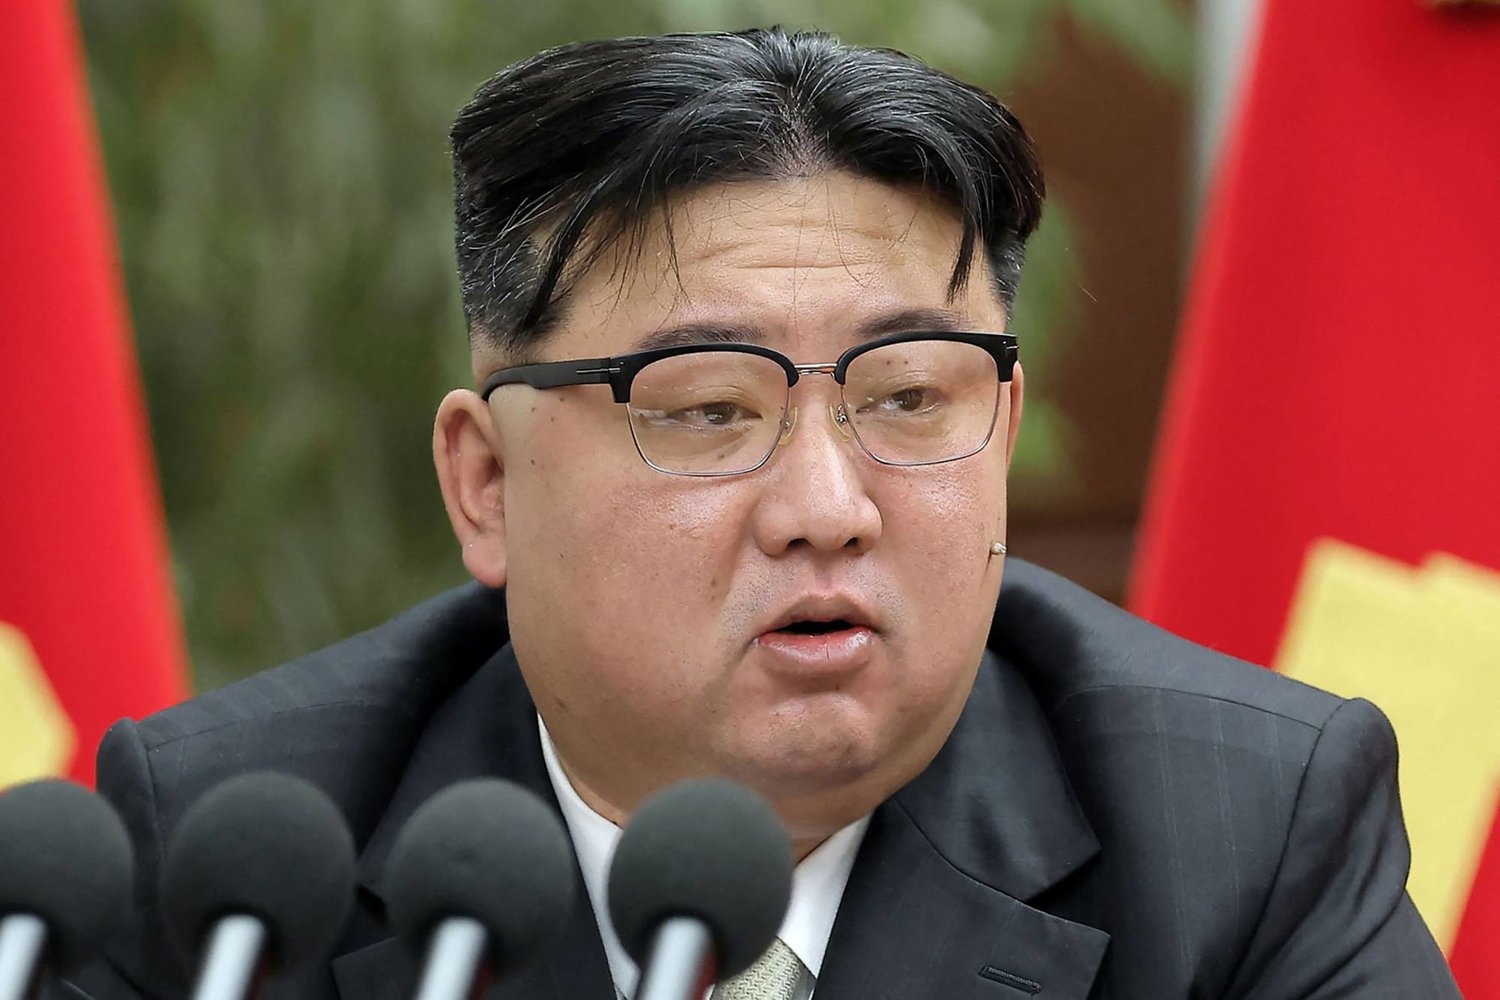 زعيم كوريا الشمالية يهدّد بتدمير واشنطن وسيول إذا اختارتا المواجهة العسكرية